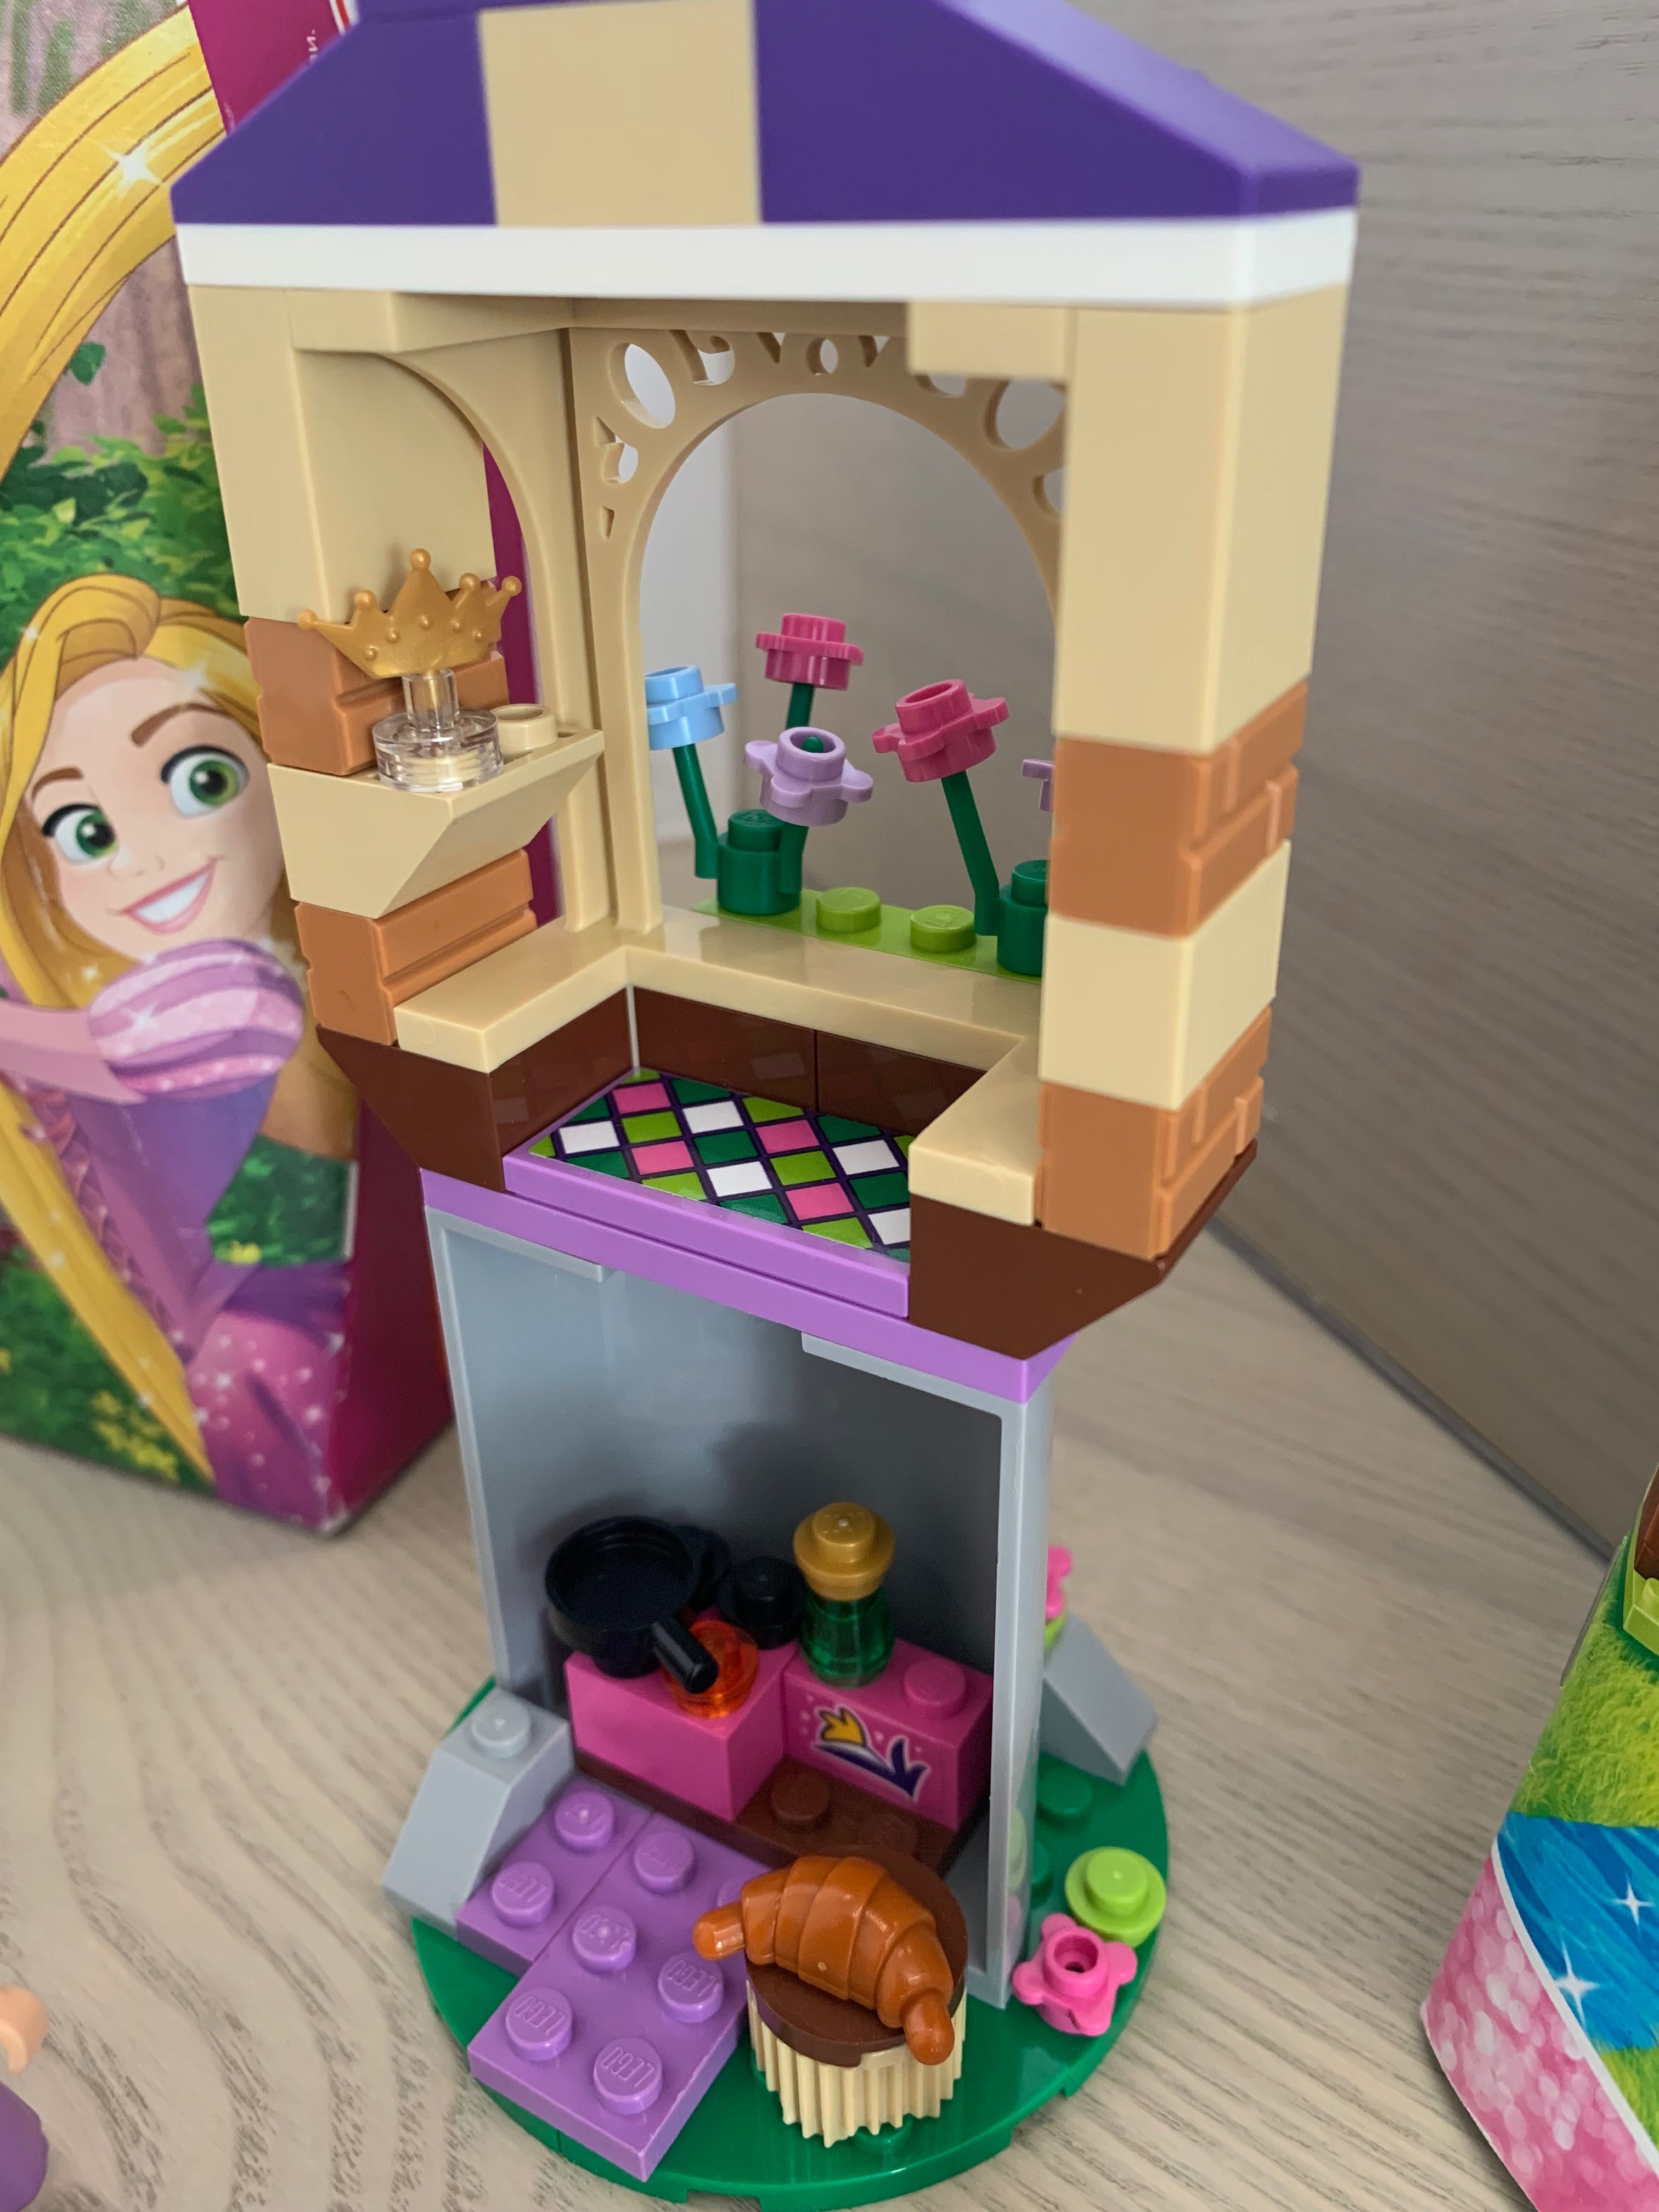 Lego Disney Princess 41065 Najlepszy dzień Roszpunki Zaplątani KOMPLET